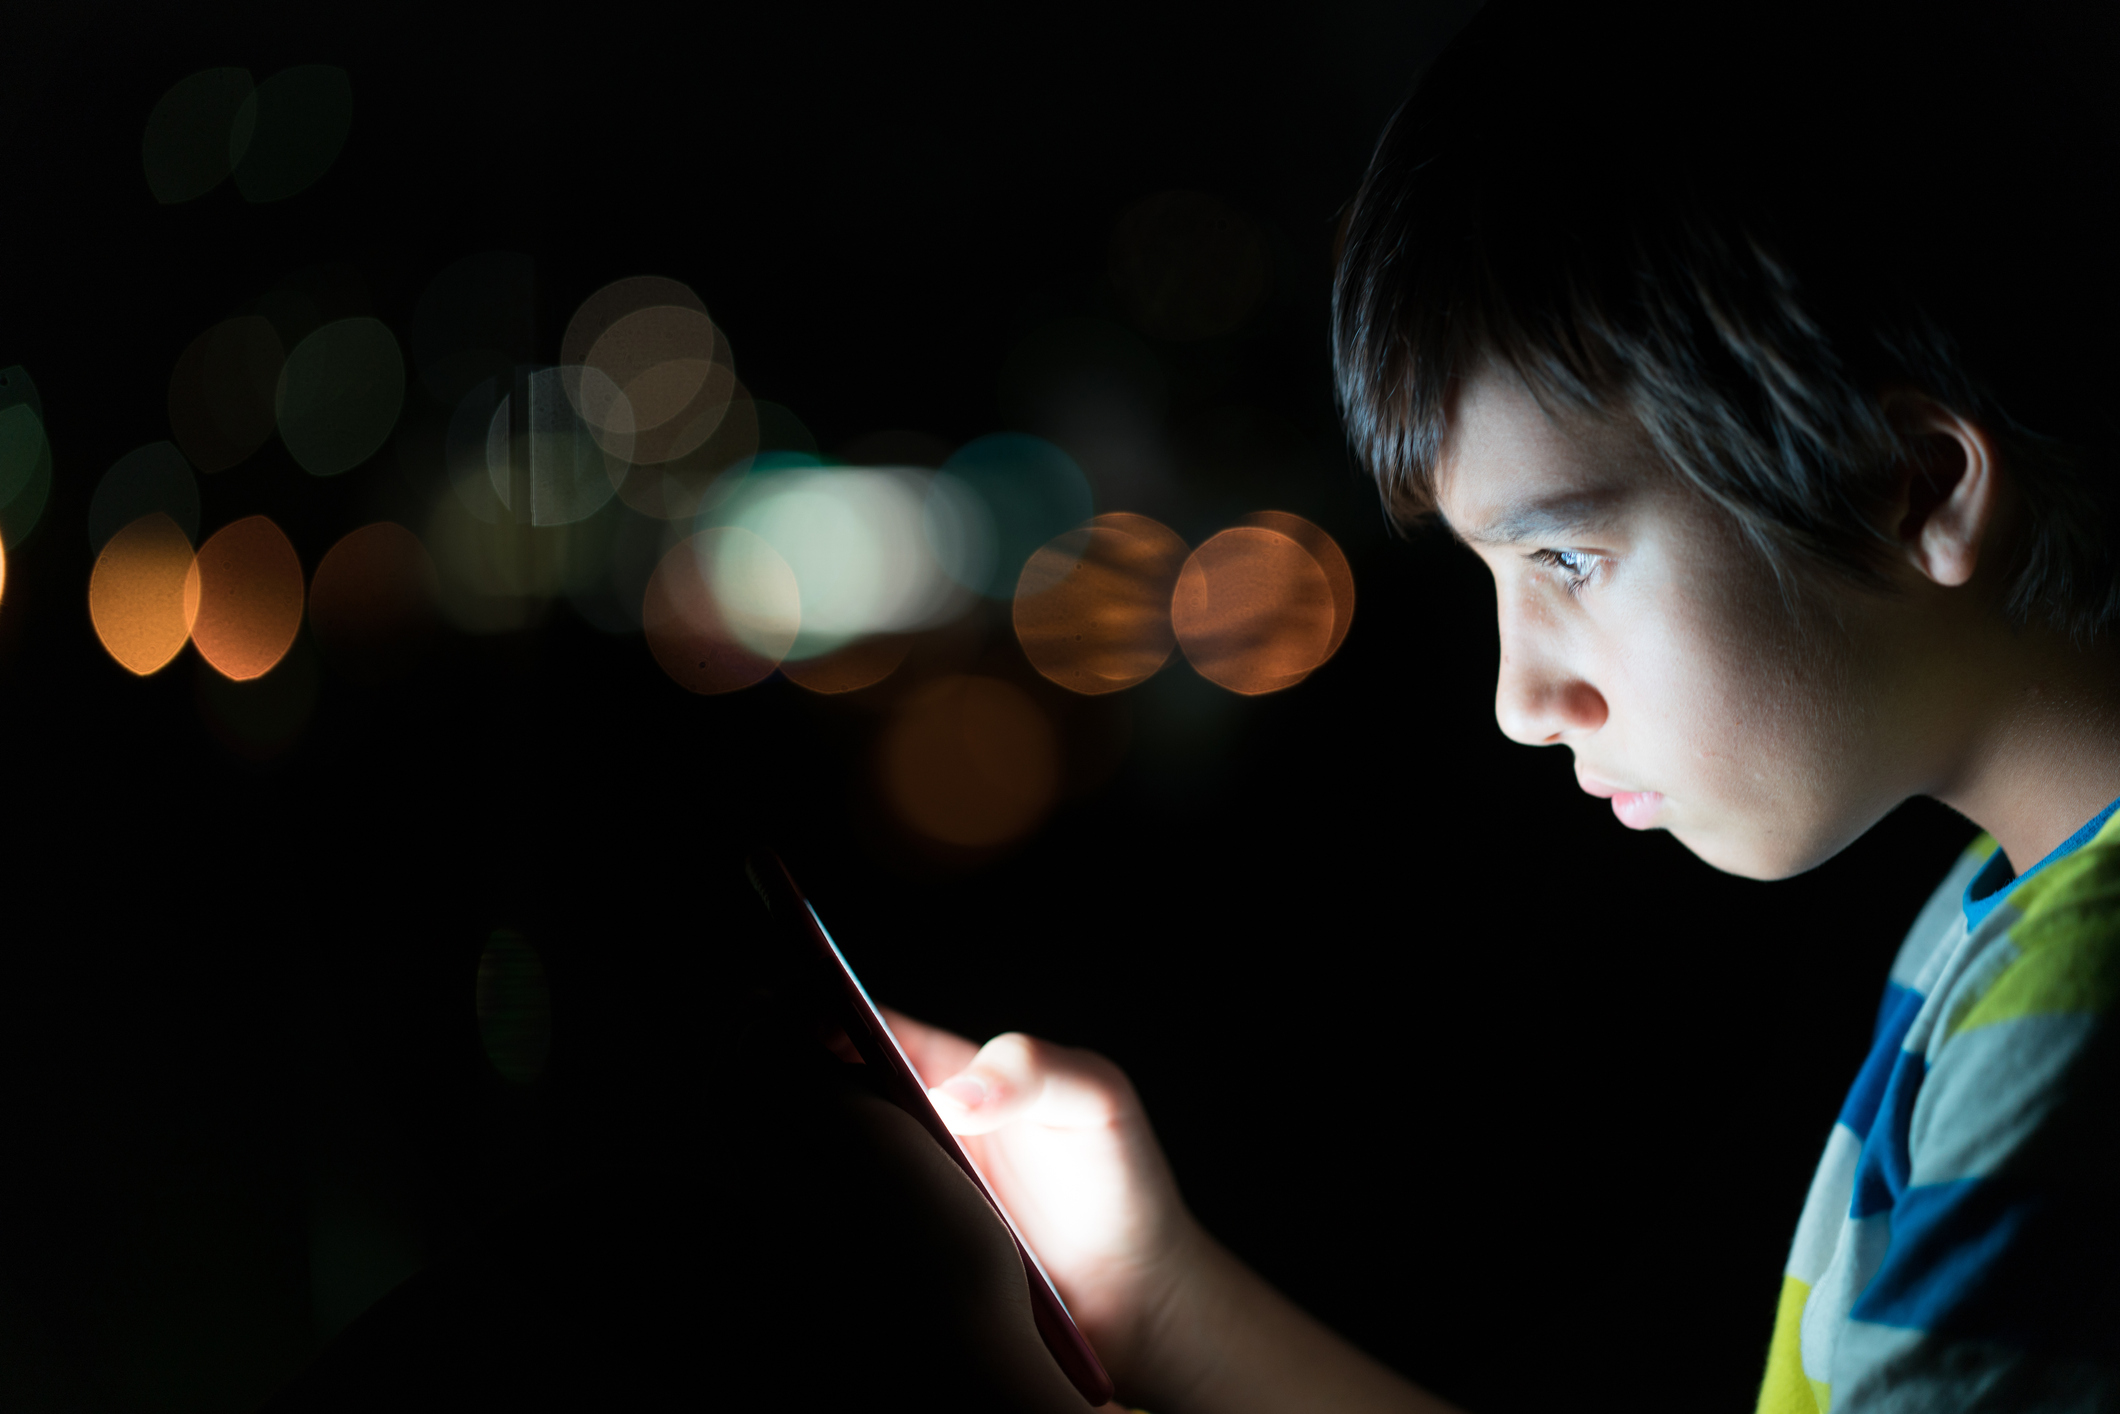 Criança usando o celular no escuro. O rosto do menino, que tem por volta de 8 anos, está iluminado pela tela.